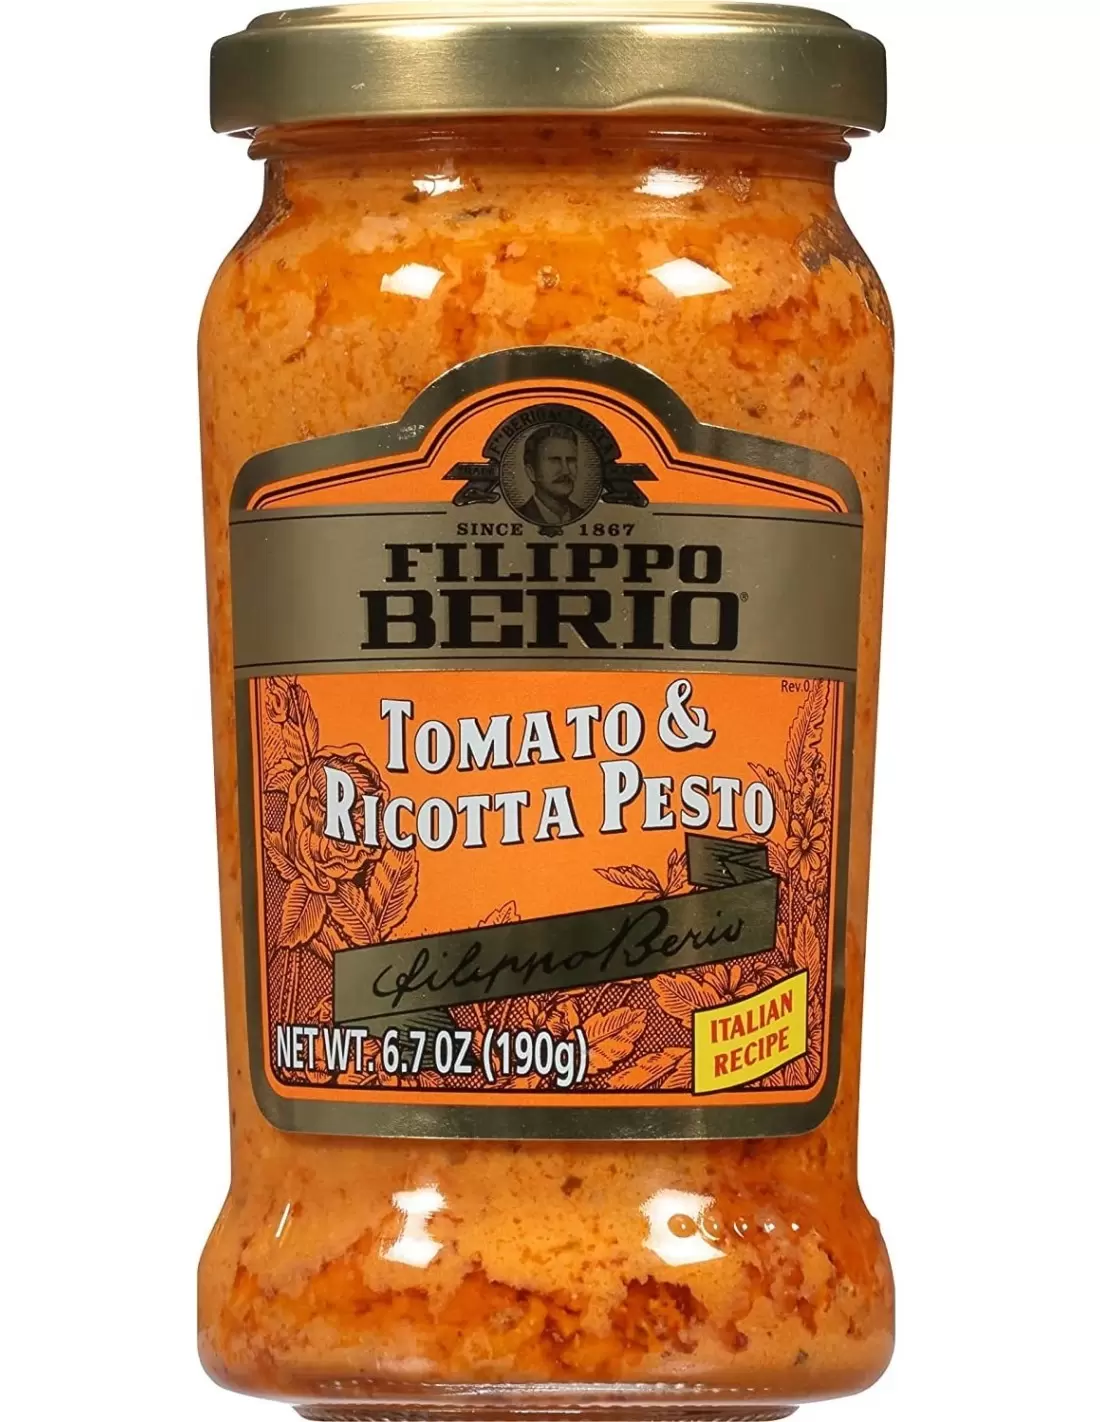 سس گوجه فرنگی و پستو ریکوتا فیلیپو بریو (ترکیبی بی نظیر از گوجه فرنگی و پنیر)-